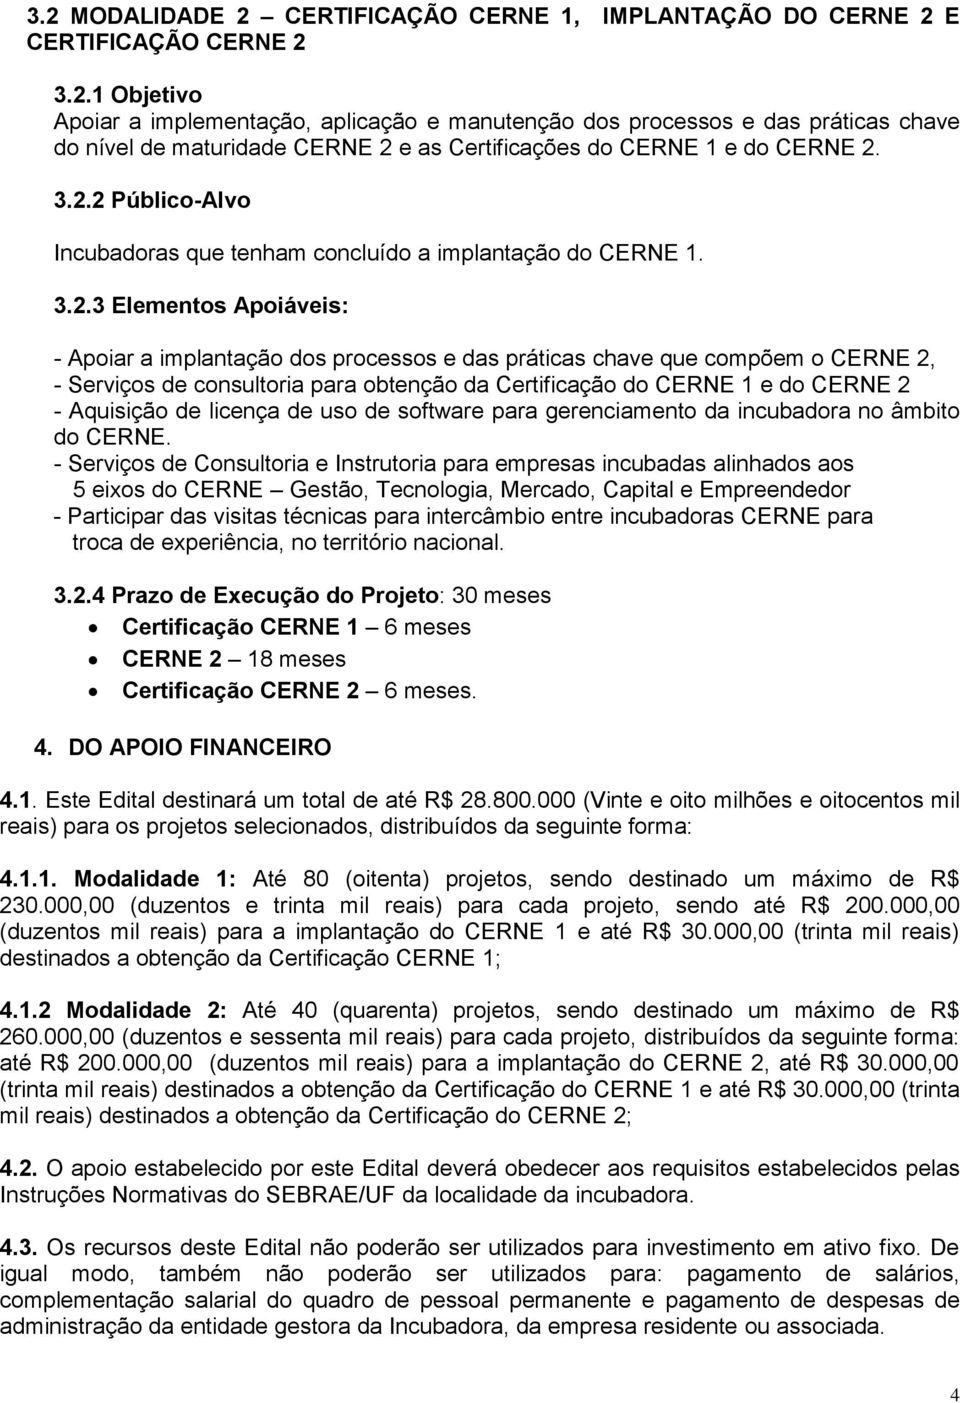 consultoria para obtenção da Certificação do CERNE 1 e do CERNE 2 - Aquisição de licença de uso de software para gerenciamento da incubadora no âmbito do CERNE.